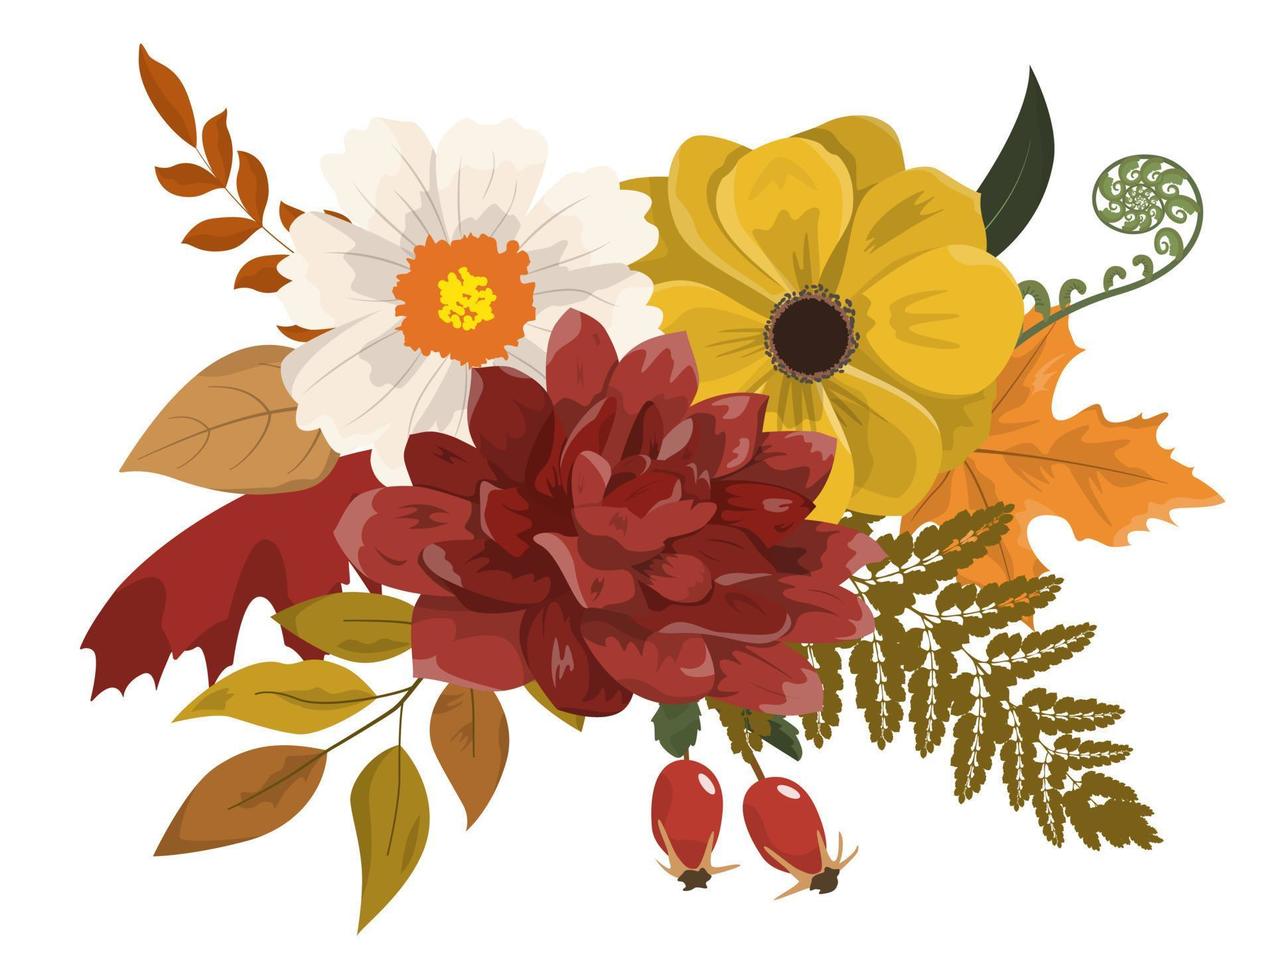 composizione floreale colorata autunnale in stile rustico. fiori, foglie secche e bacche. isolato su sfondo bianco. design di biglietti per le vacanze autunnali vettore